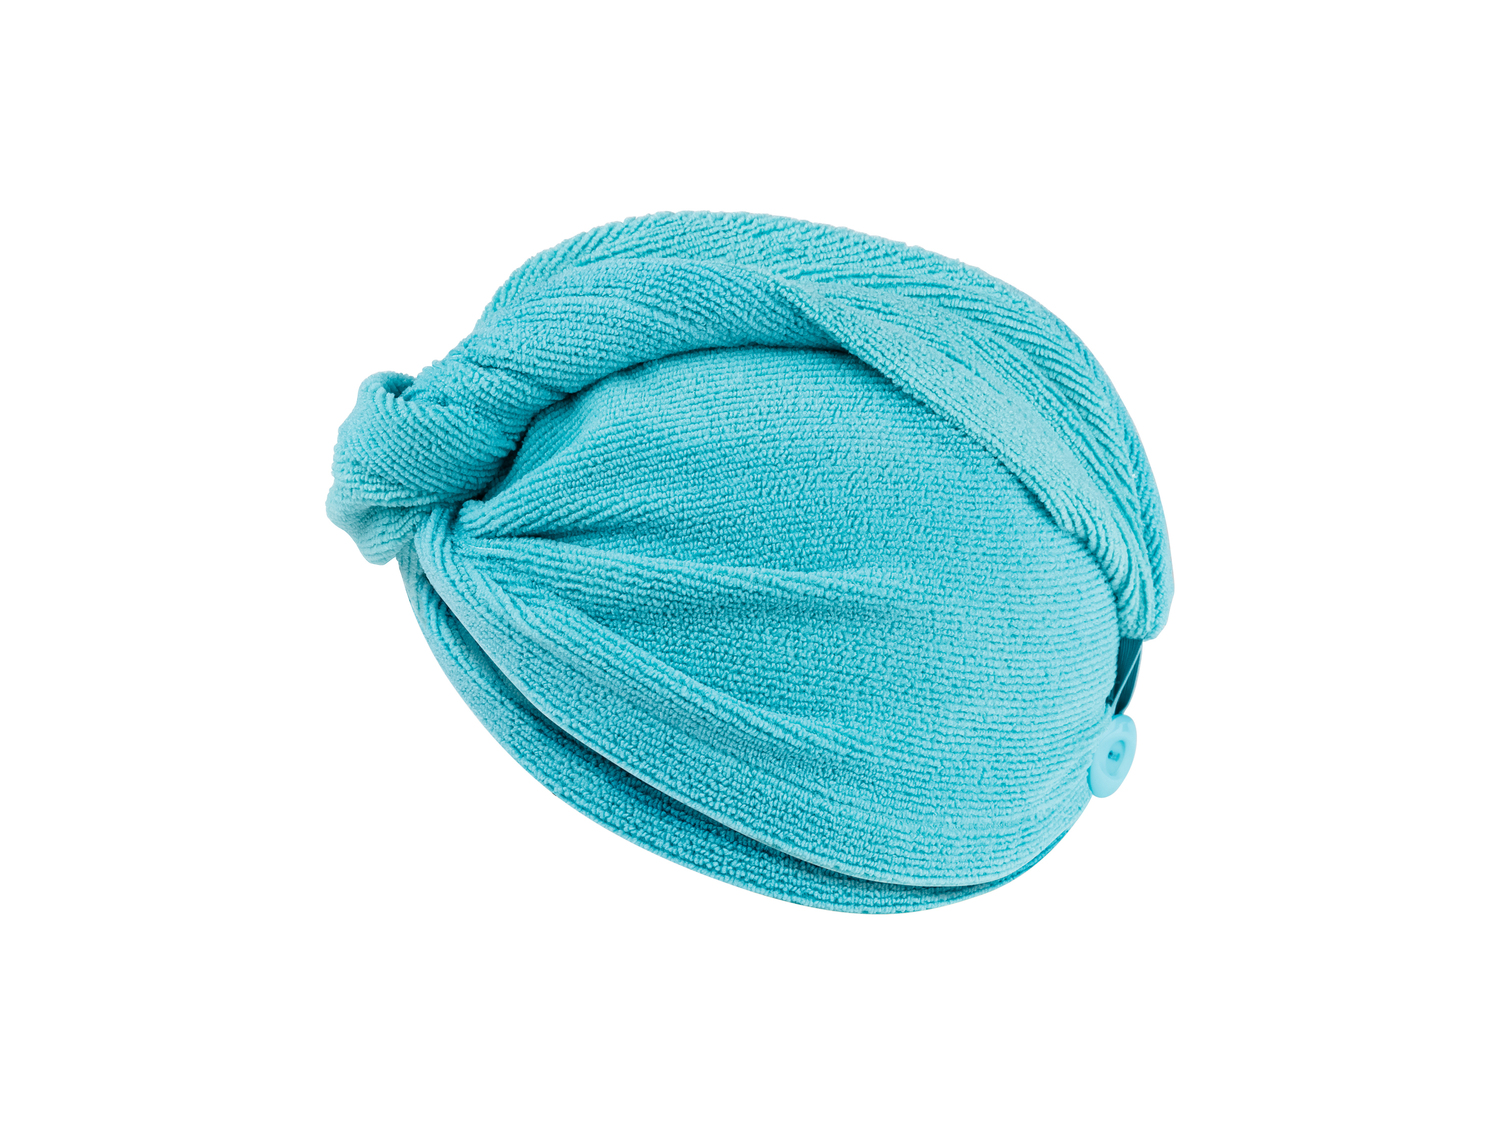 Asciugamano a turbante per capelli Miomare, prezzo 3.99 &#8364; 

Caratteristiche

- ...